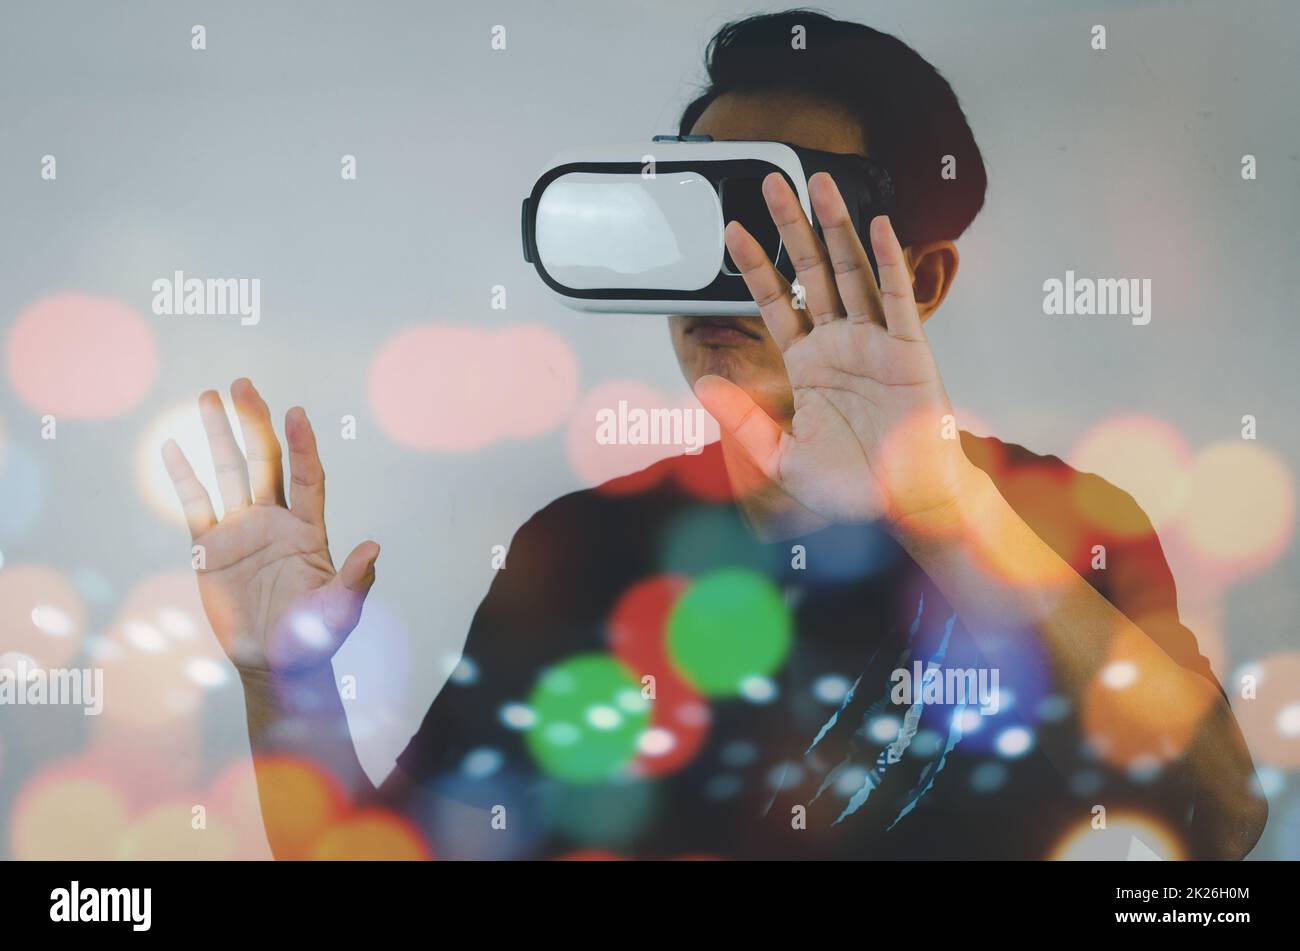 Metaverso uomo che utilizza il dispositivo di realtà virtuale con visore per realtà virtuale, simulazione, 3D, AR, concetto di tecnologia VR. Foto Stock